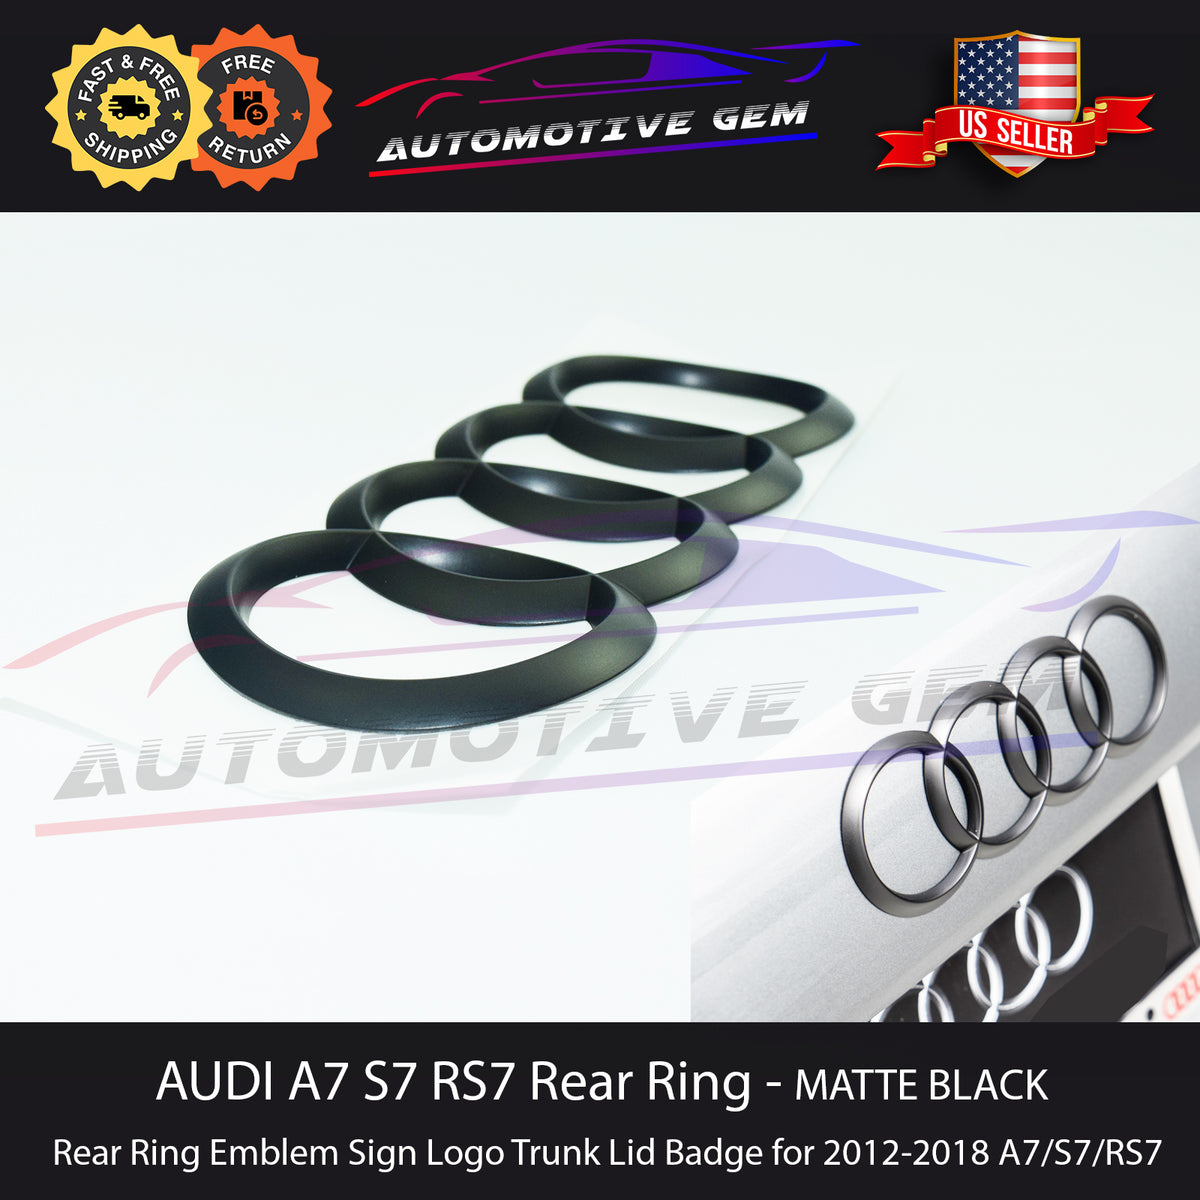 AUDI A7 S7 RS7 Trunk Emblem Curve Ring MATTE BLACK Rear Lid Hatch Logo –  Automotive Gem